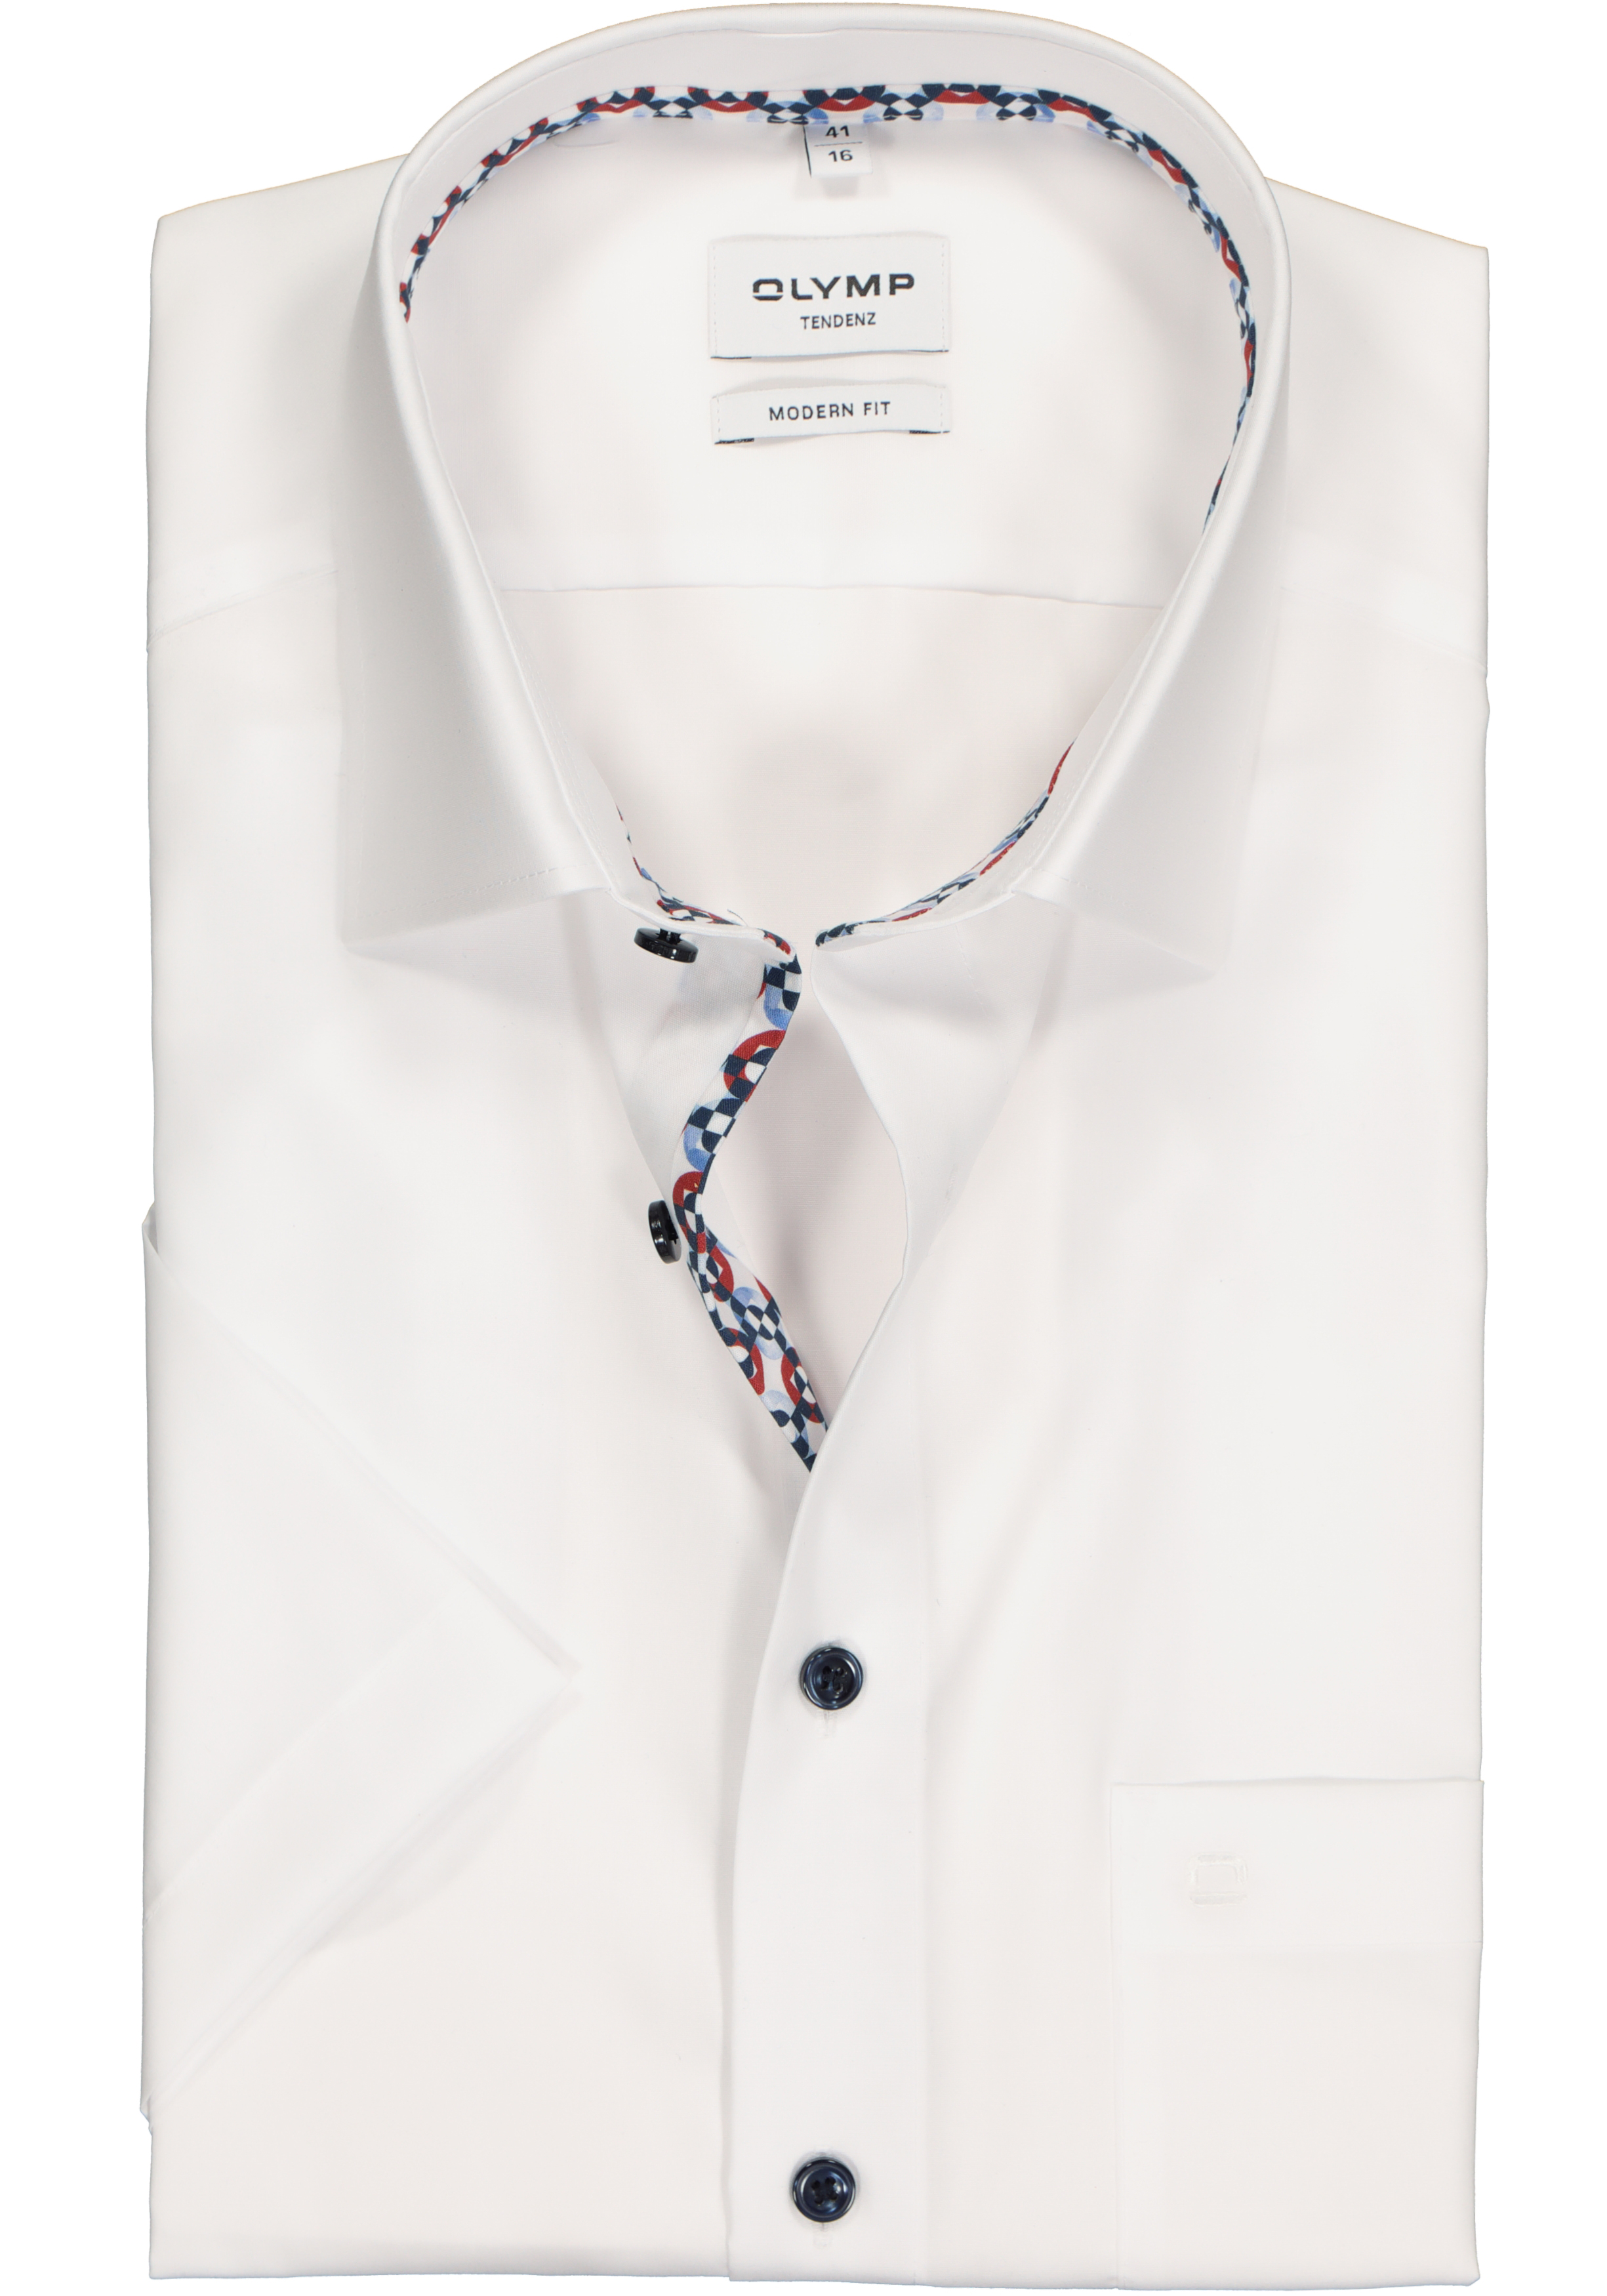 OLYMP modern fit overhemd, korte mouw, popeline, wit (contrast)